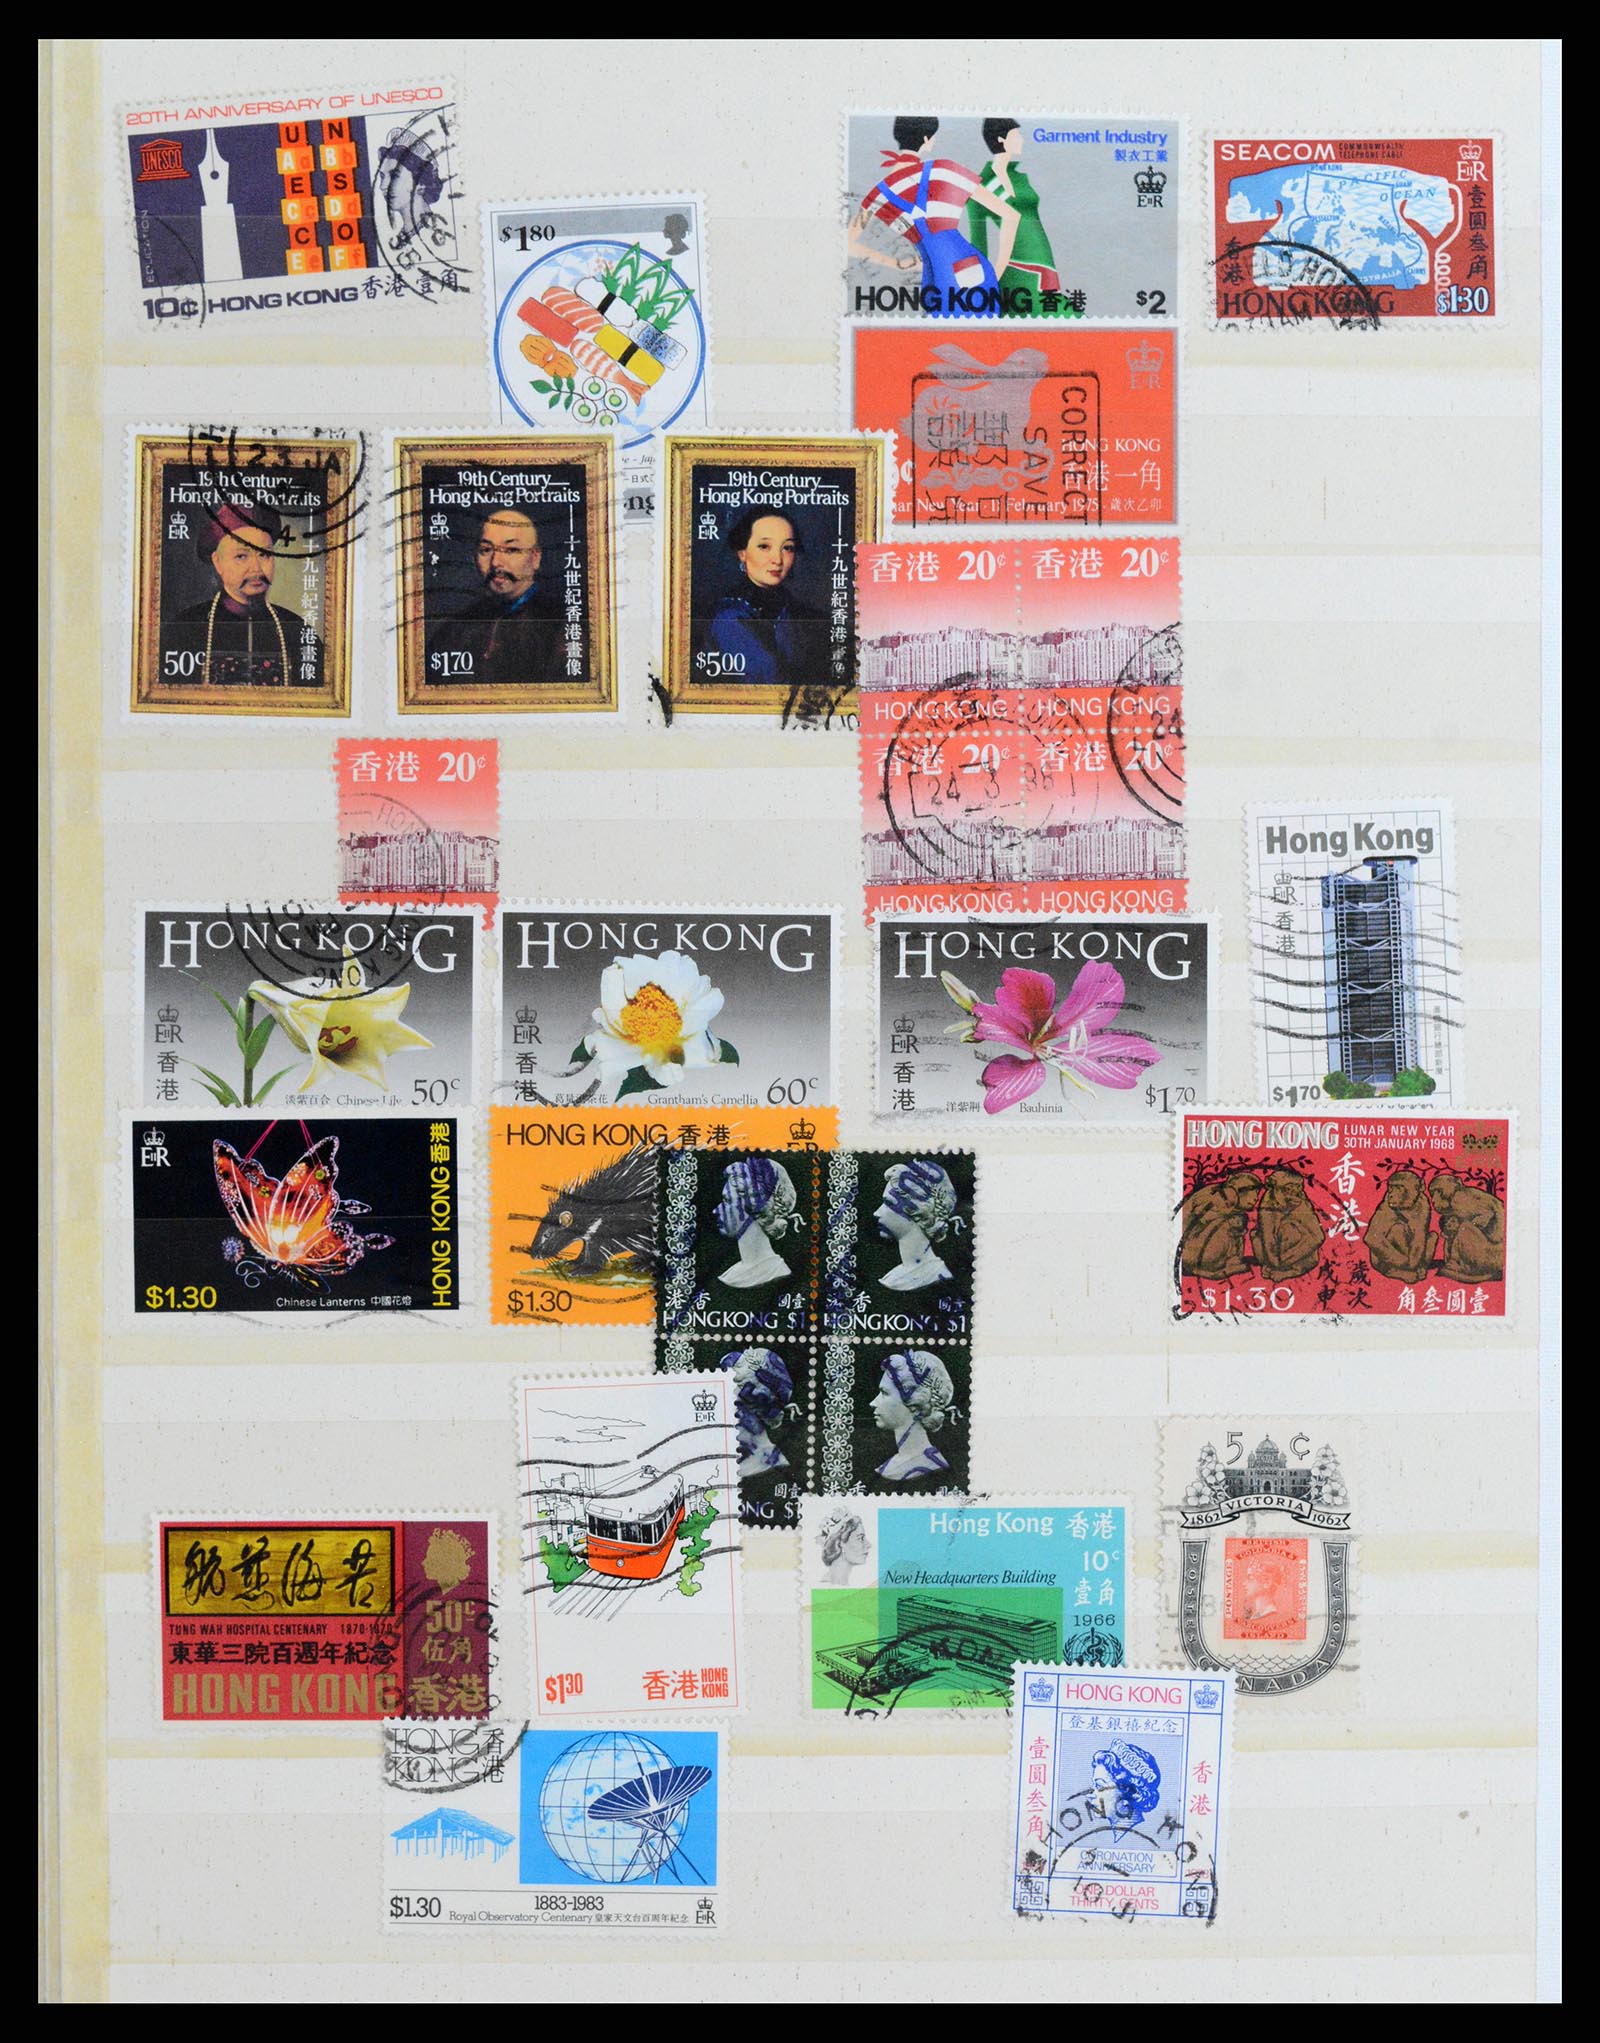 37358 034 - Stamp collection 37358 Hong Kong 1861-1997.